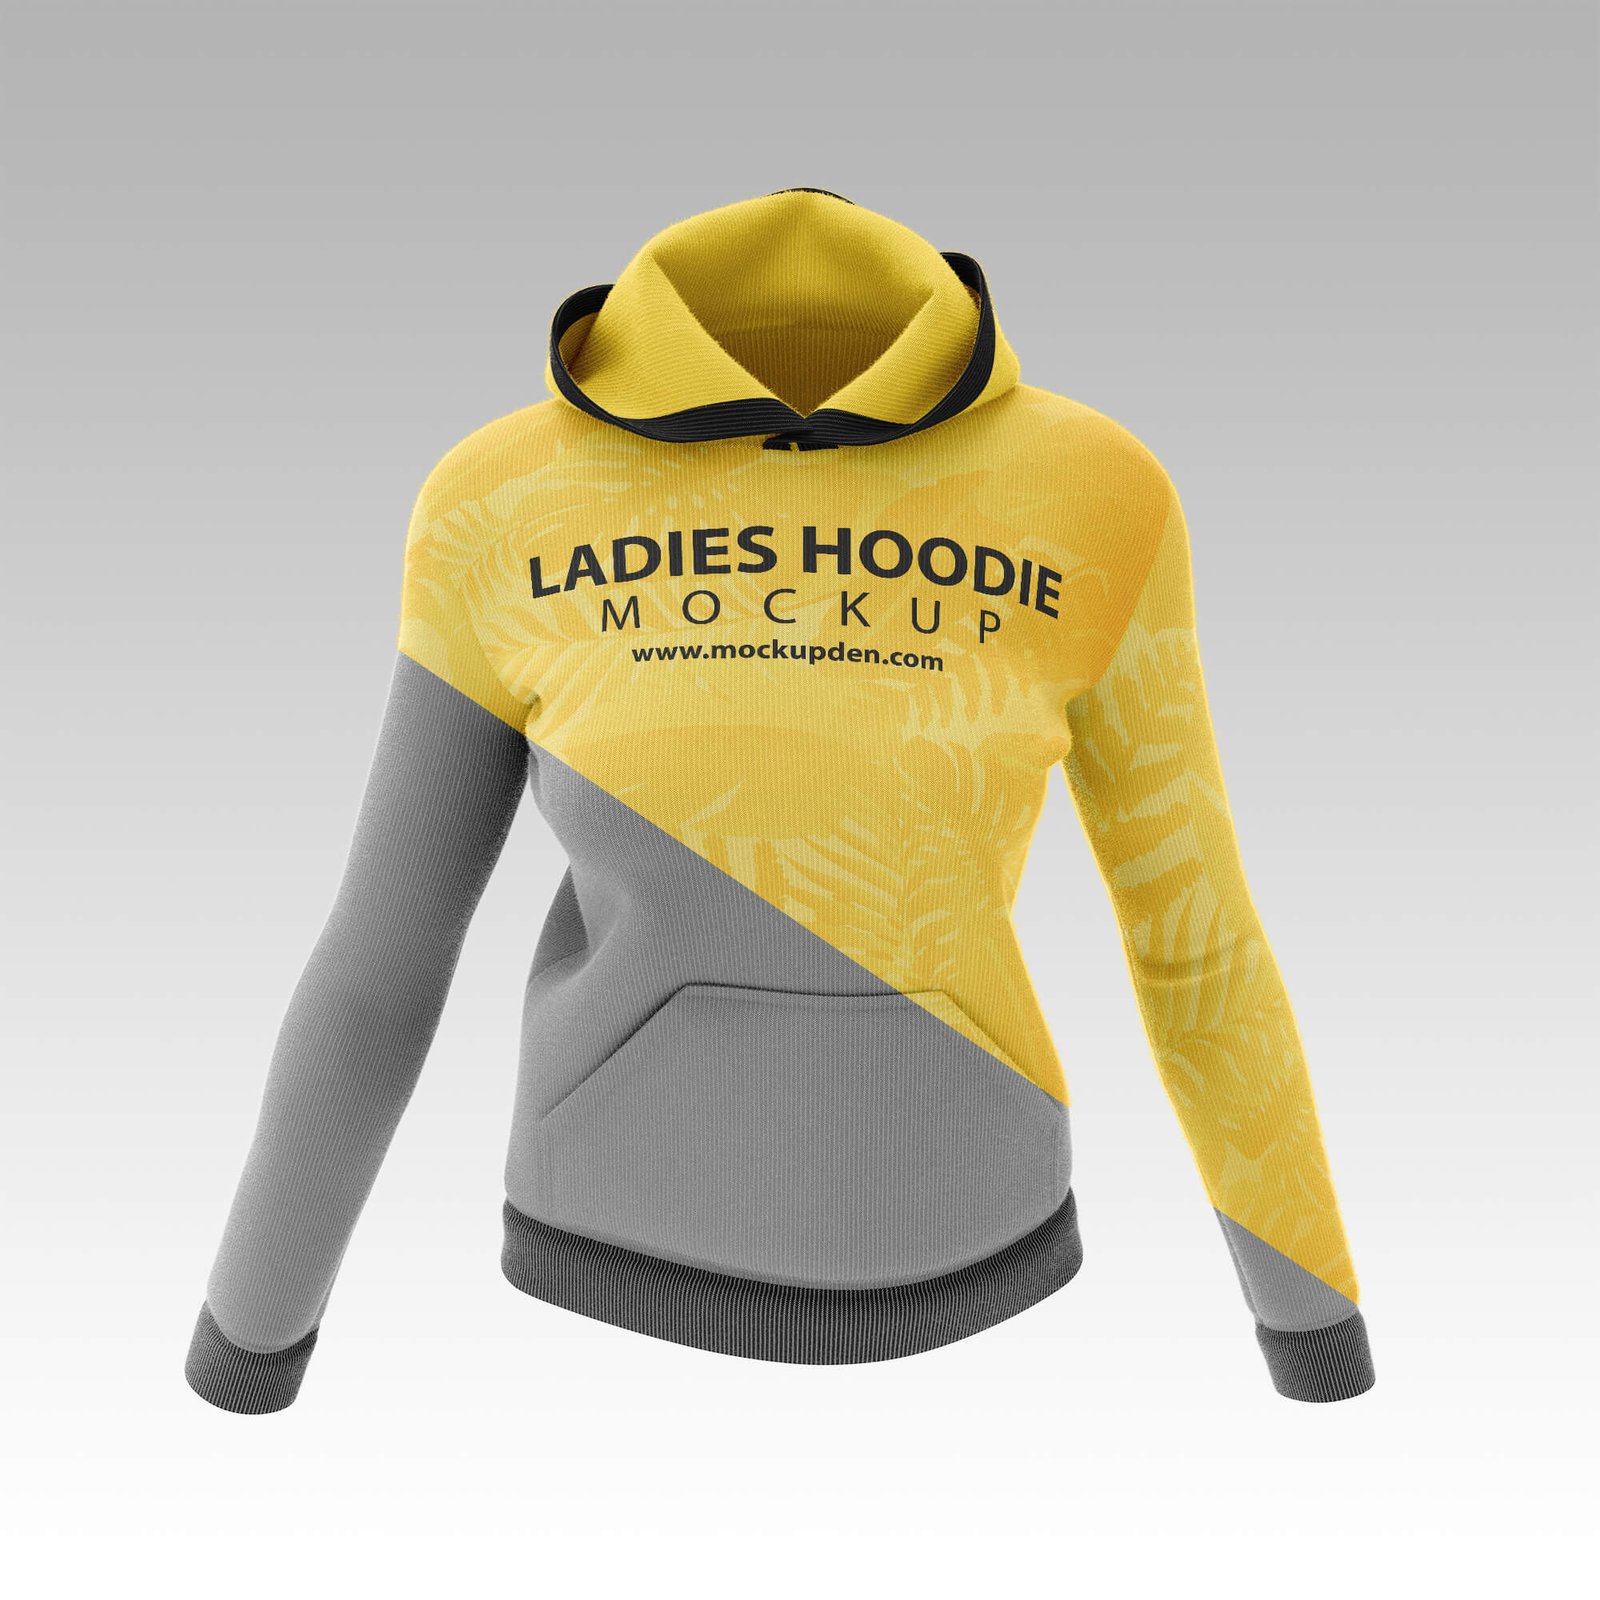 Editable Free Ladies Hoodie Mockup PSD Template